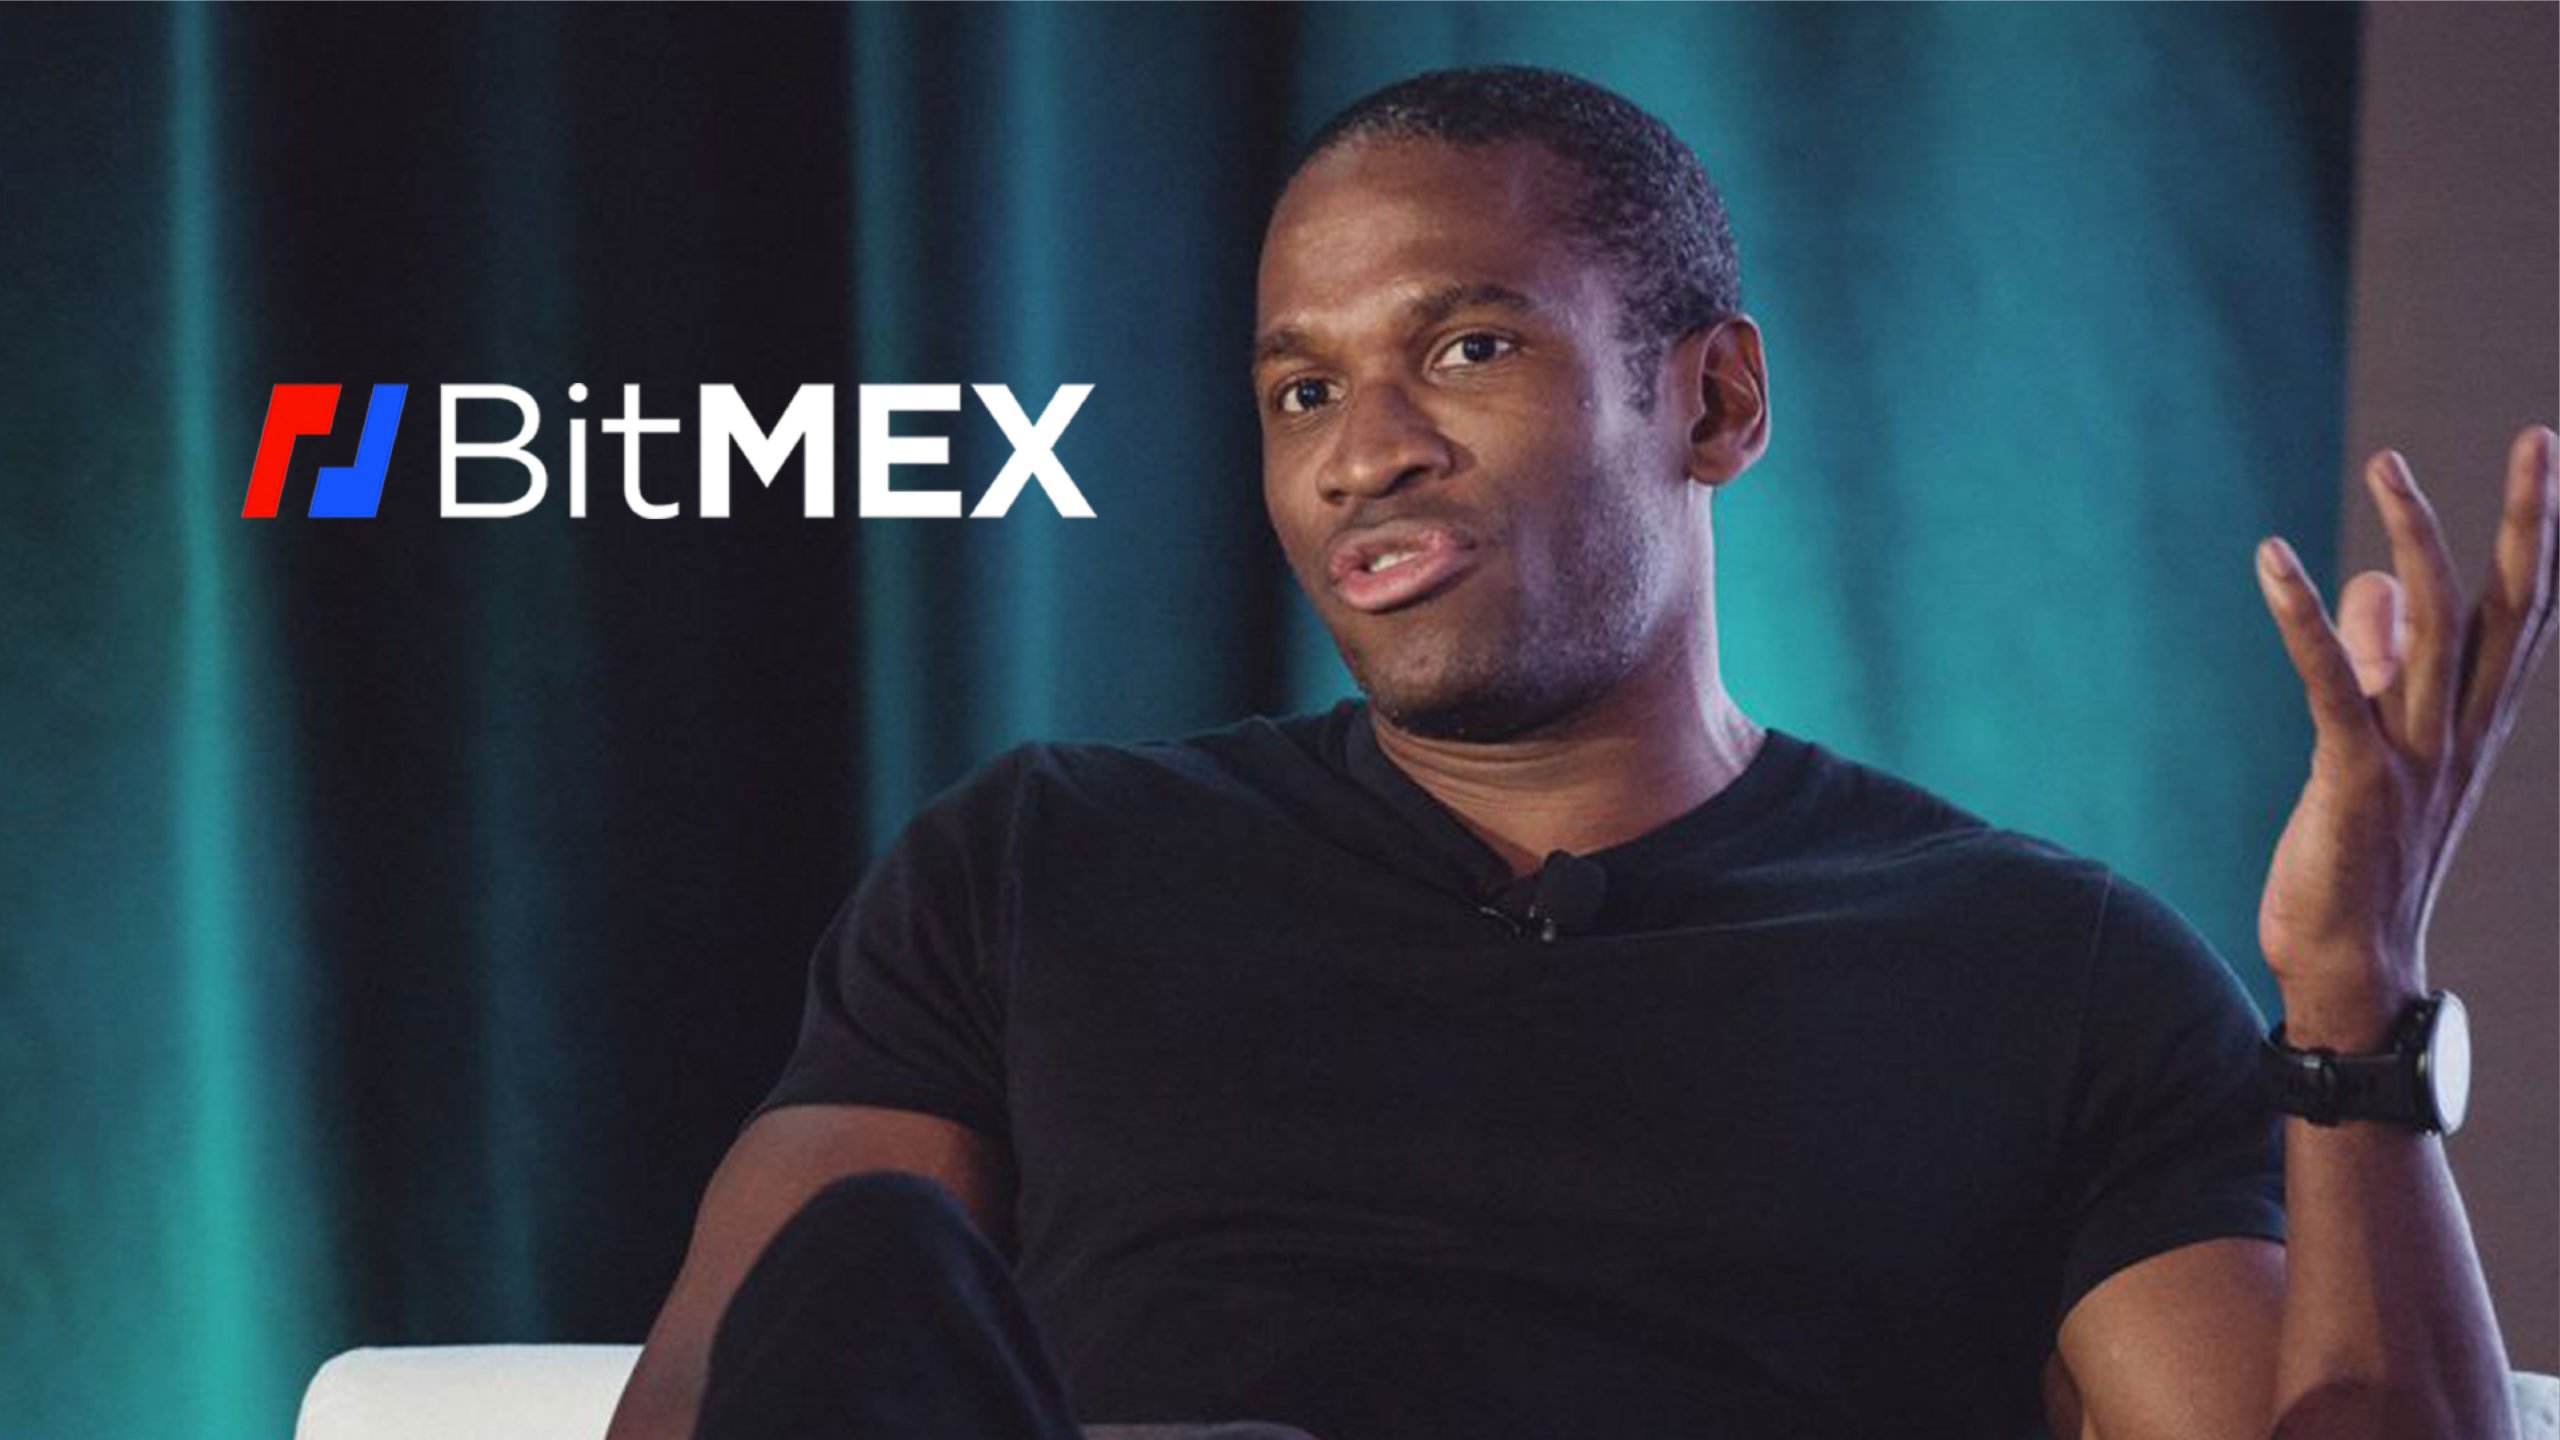 BitMEXi tegevjuht Arthur Hayes rääkis ennustustest, et järgmisel kümnendil tuleb suur finantskriis